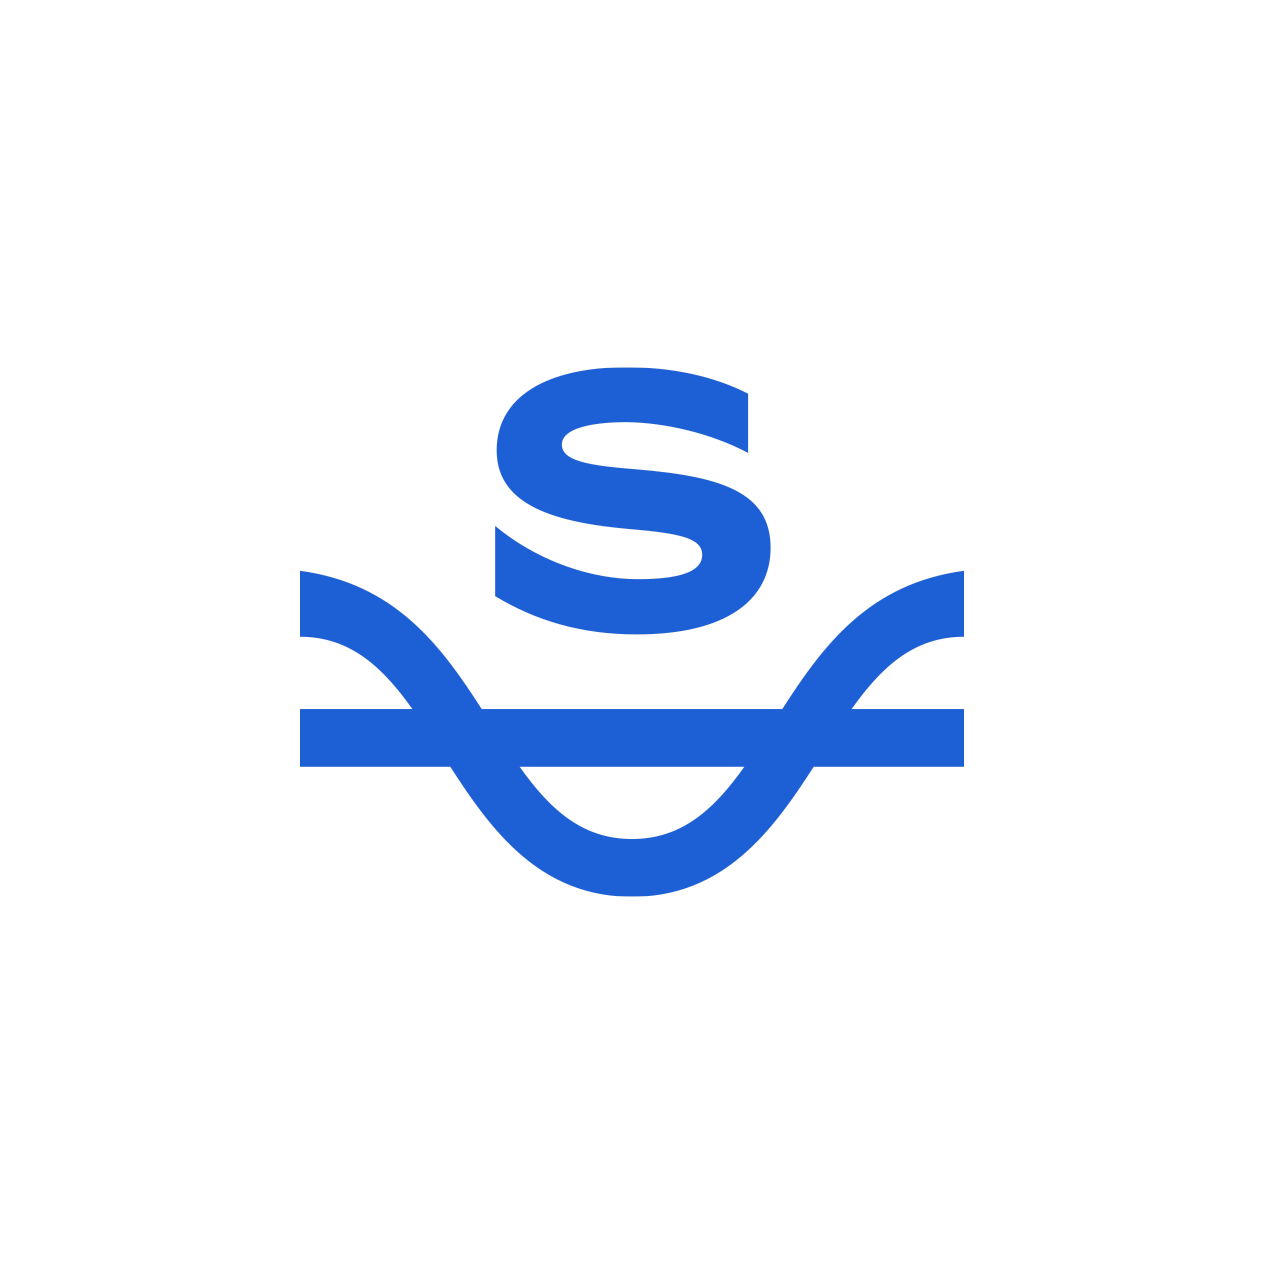 nelsoncouto-work-logos-slacktidedevelopment-v2